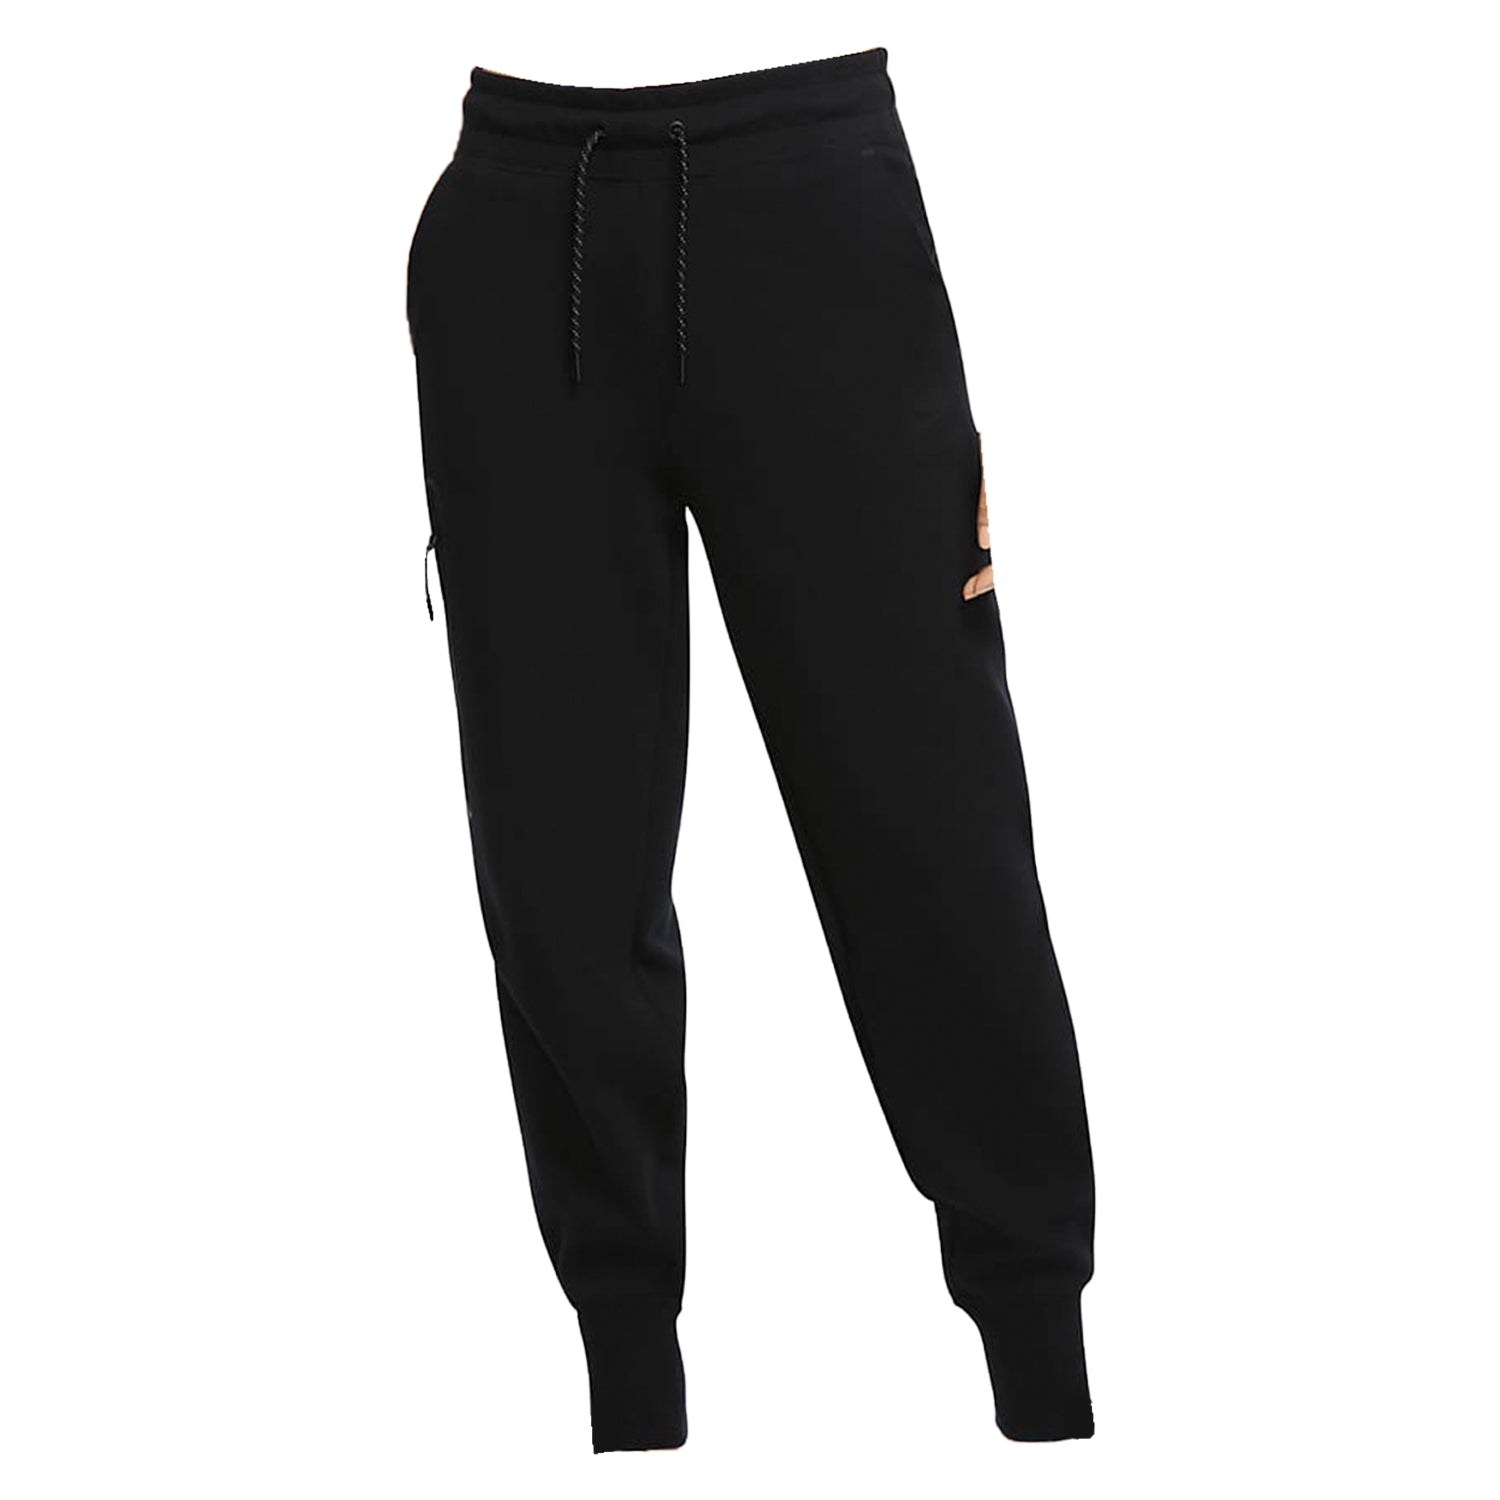 Nike Women's Tech Fleece Joggers Black/Black